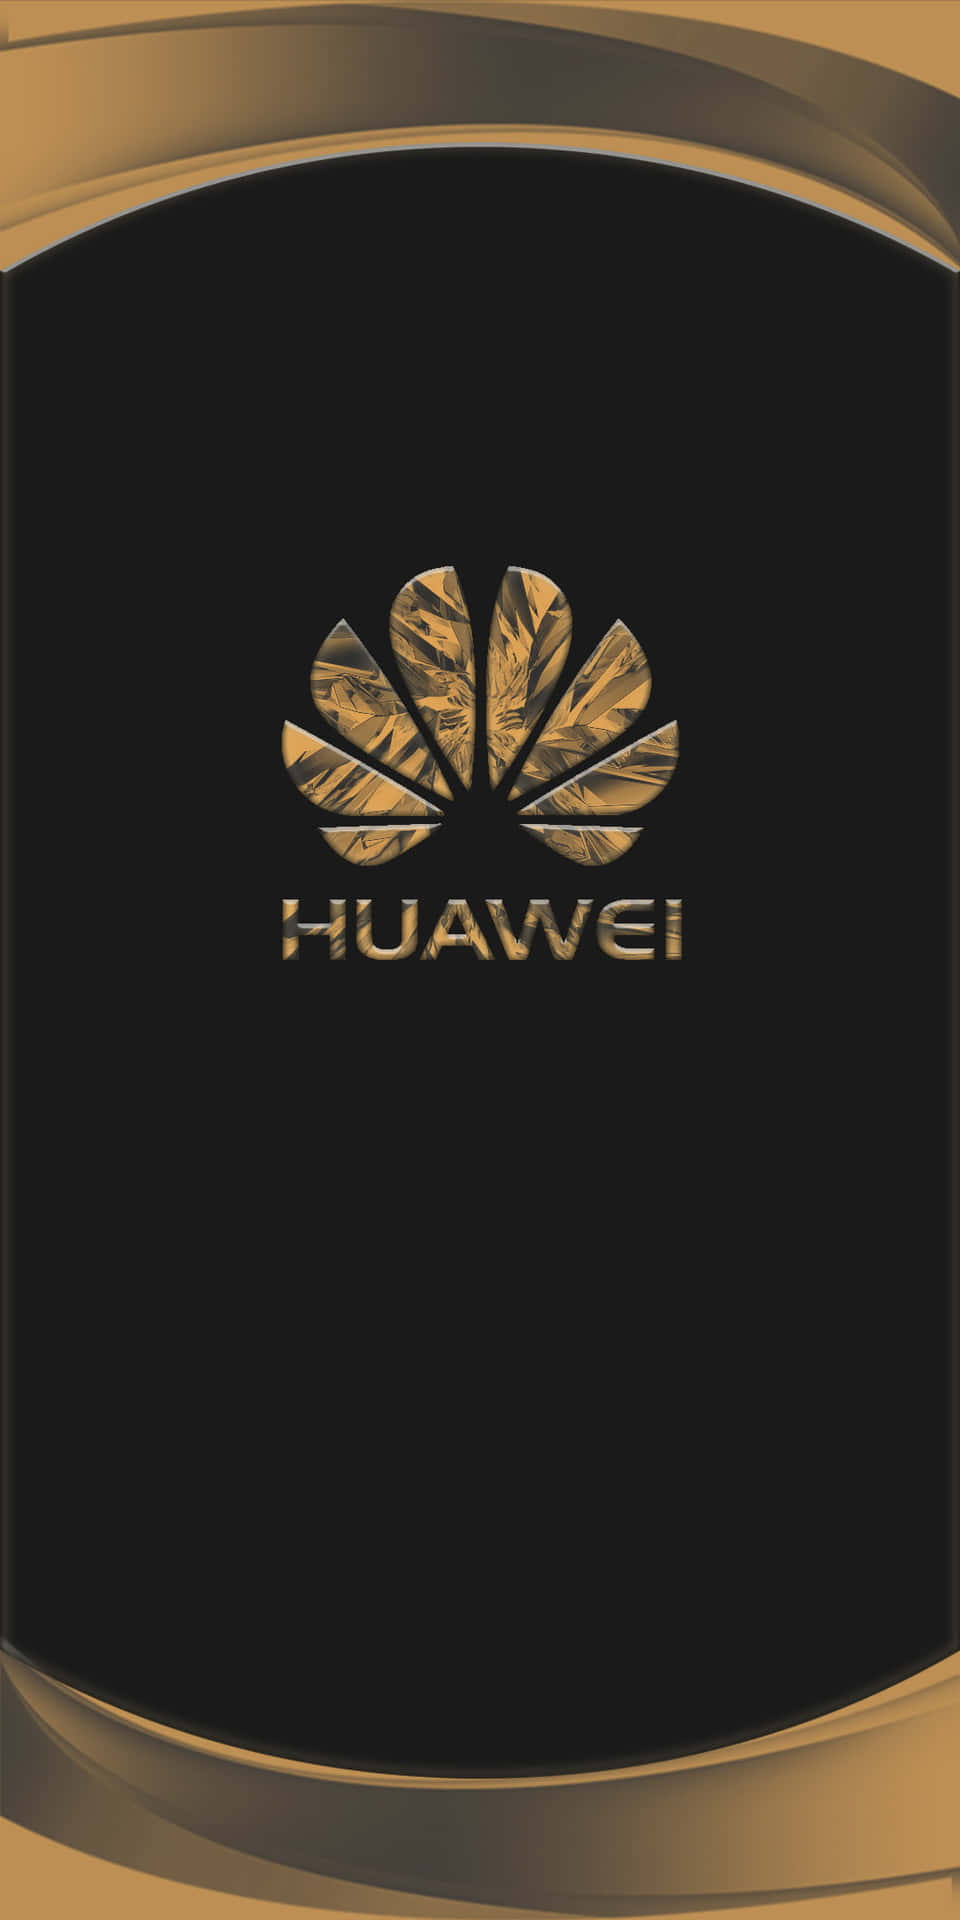 Fådet Bedste Ud Af Din Hverdag Med En Huawei-enhed.